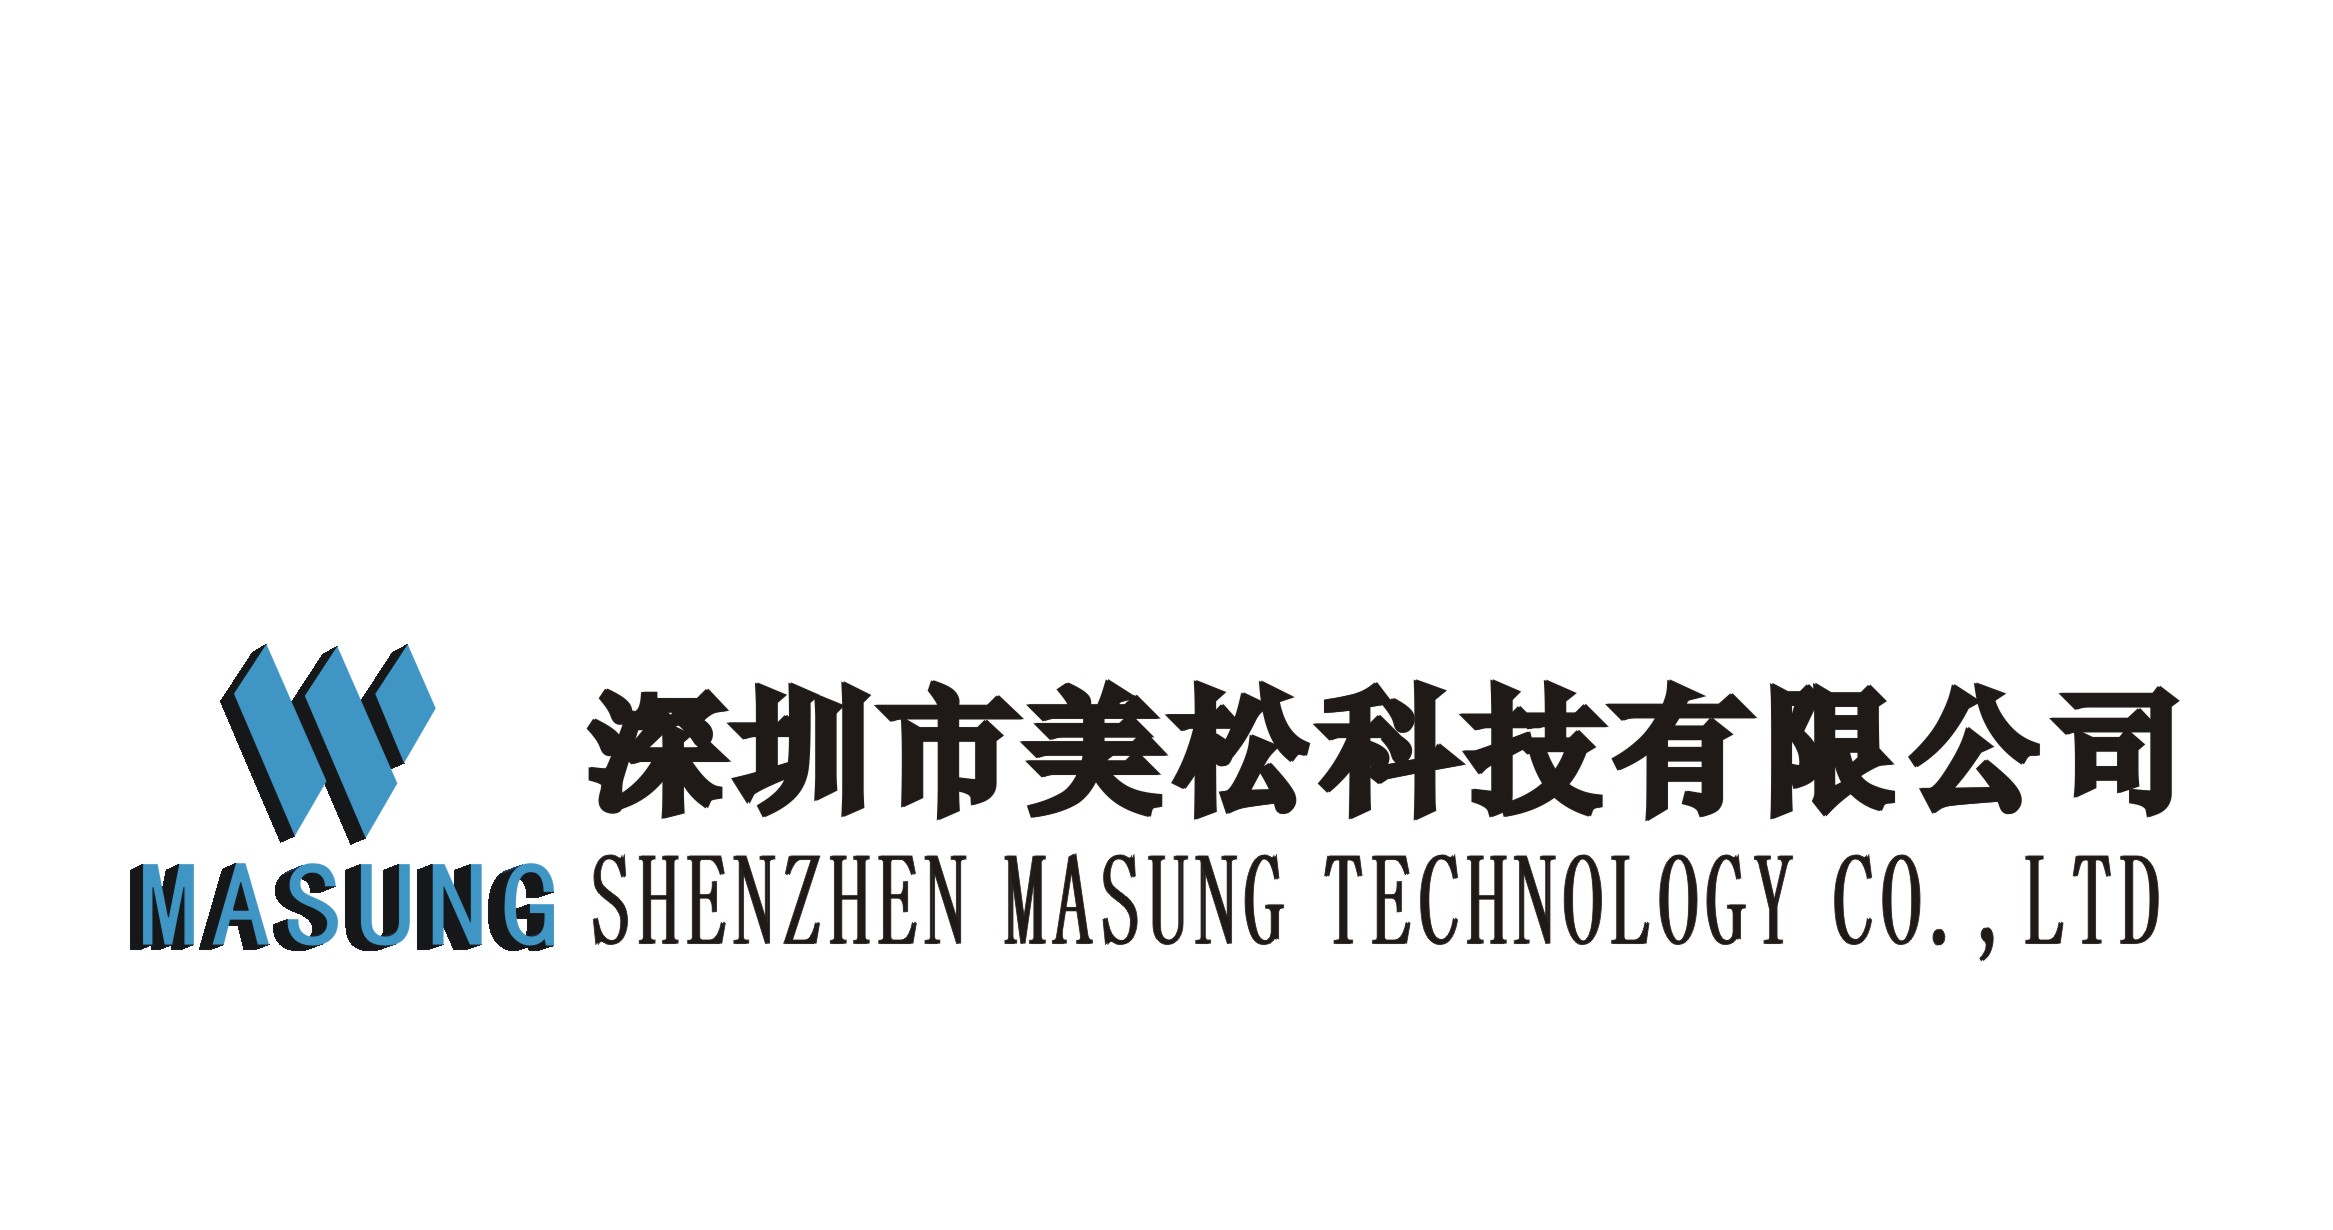 Shenzhen Masung Technology Co., Ltd